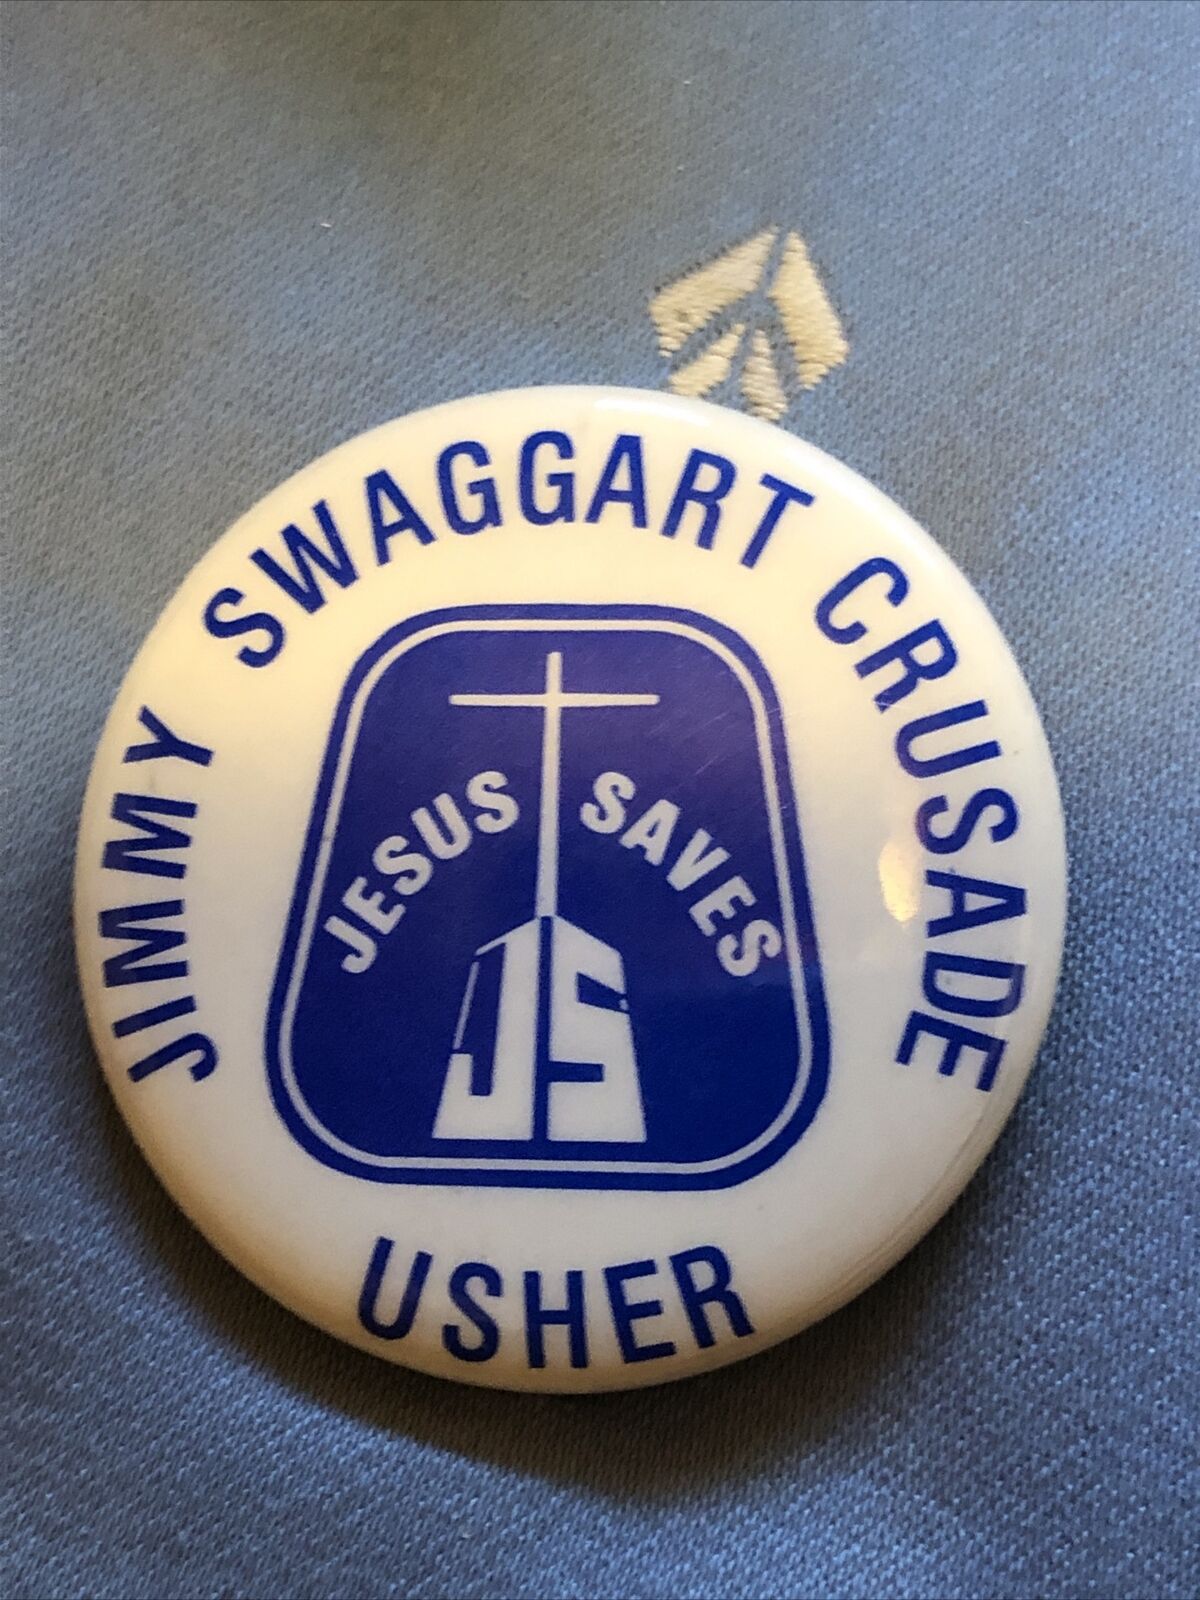  *VINTAGE* PIN - Jimmy Swaggart Crusade Usher Pin/circa 1970's